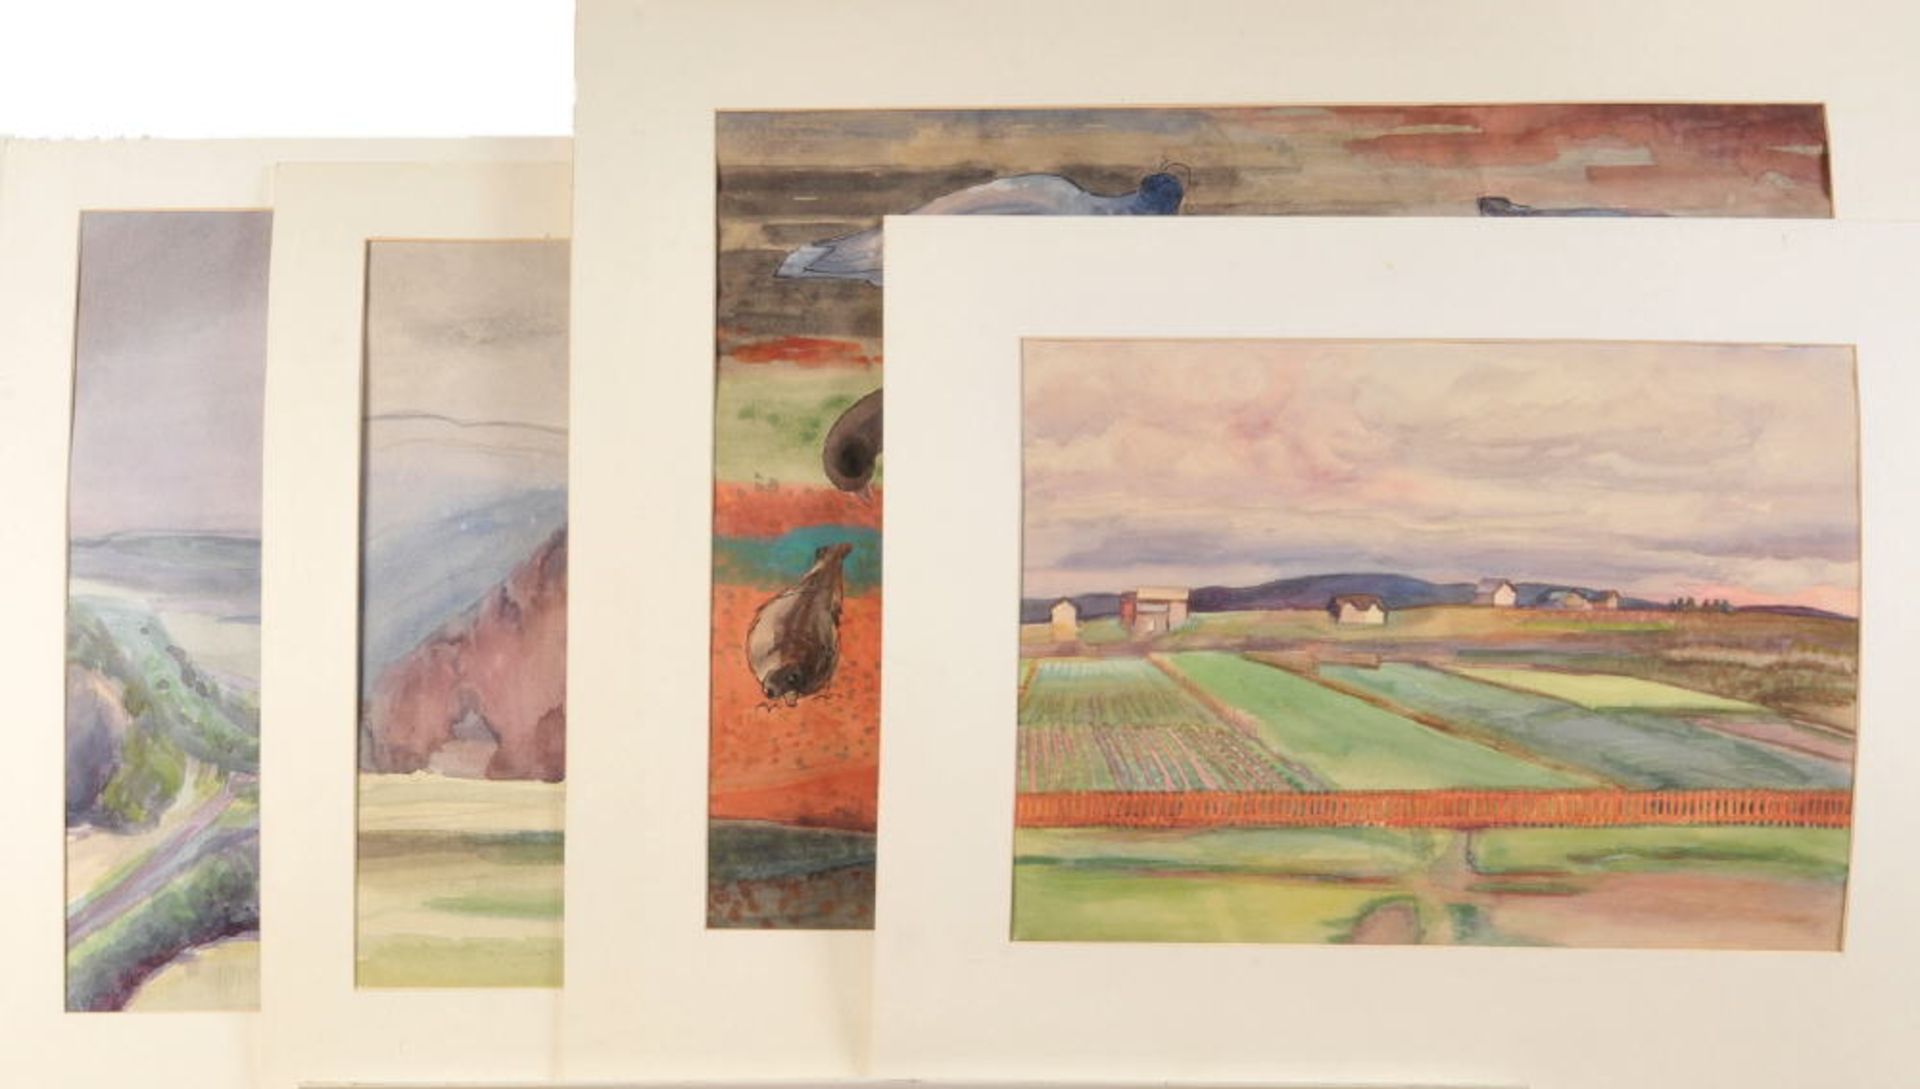 Buchty, Josef, 1896 Aachen - 1966 Garmisch-PartenkirchenAquarell, 41 x 57 cm, " Gehöft in Landschaft